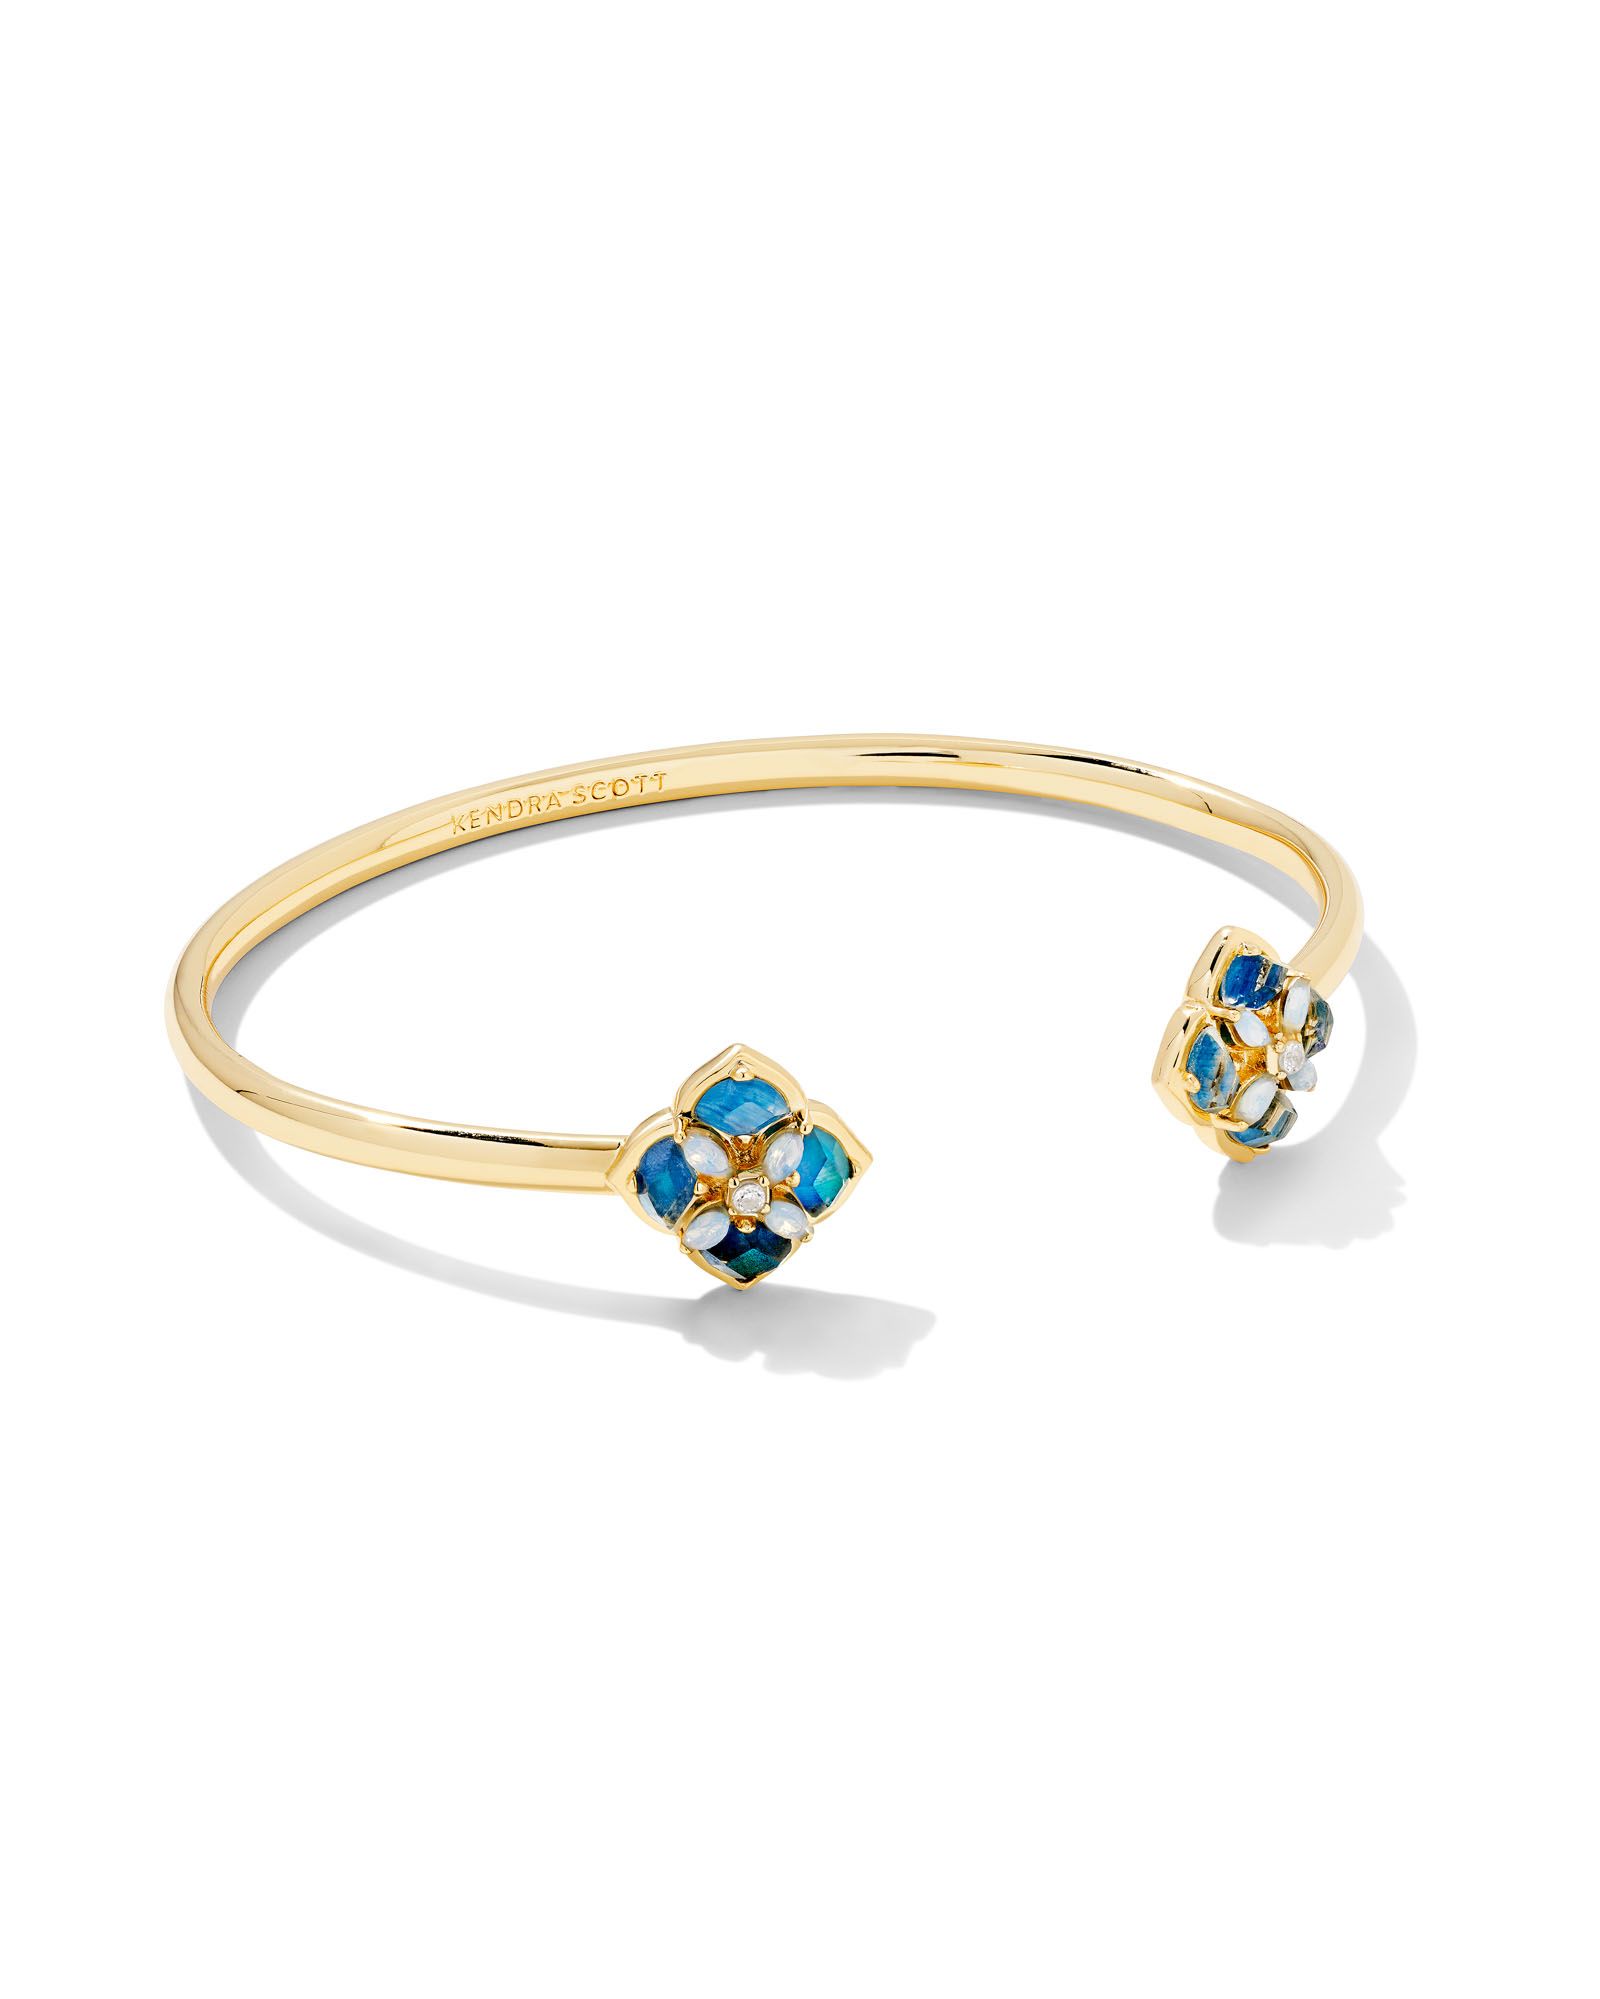 Dira Stone Gold Cuff Bracelet in Blue Mix | Kendra Scott